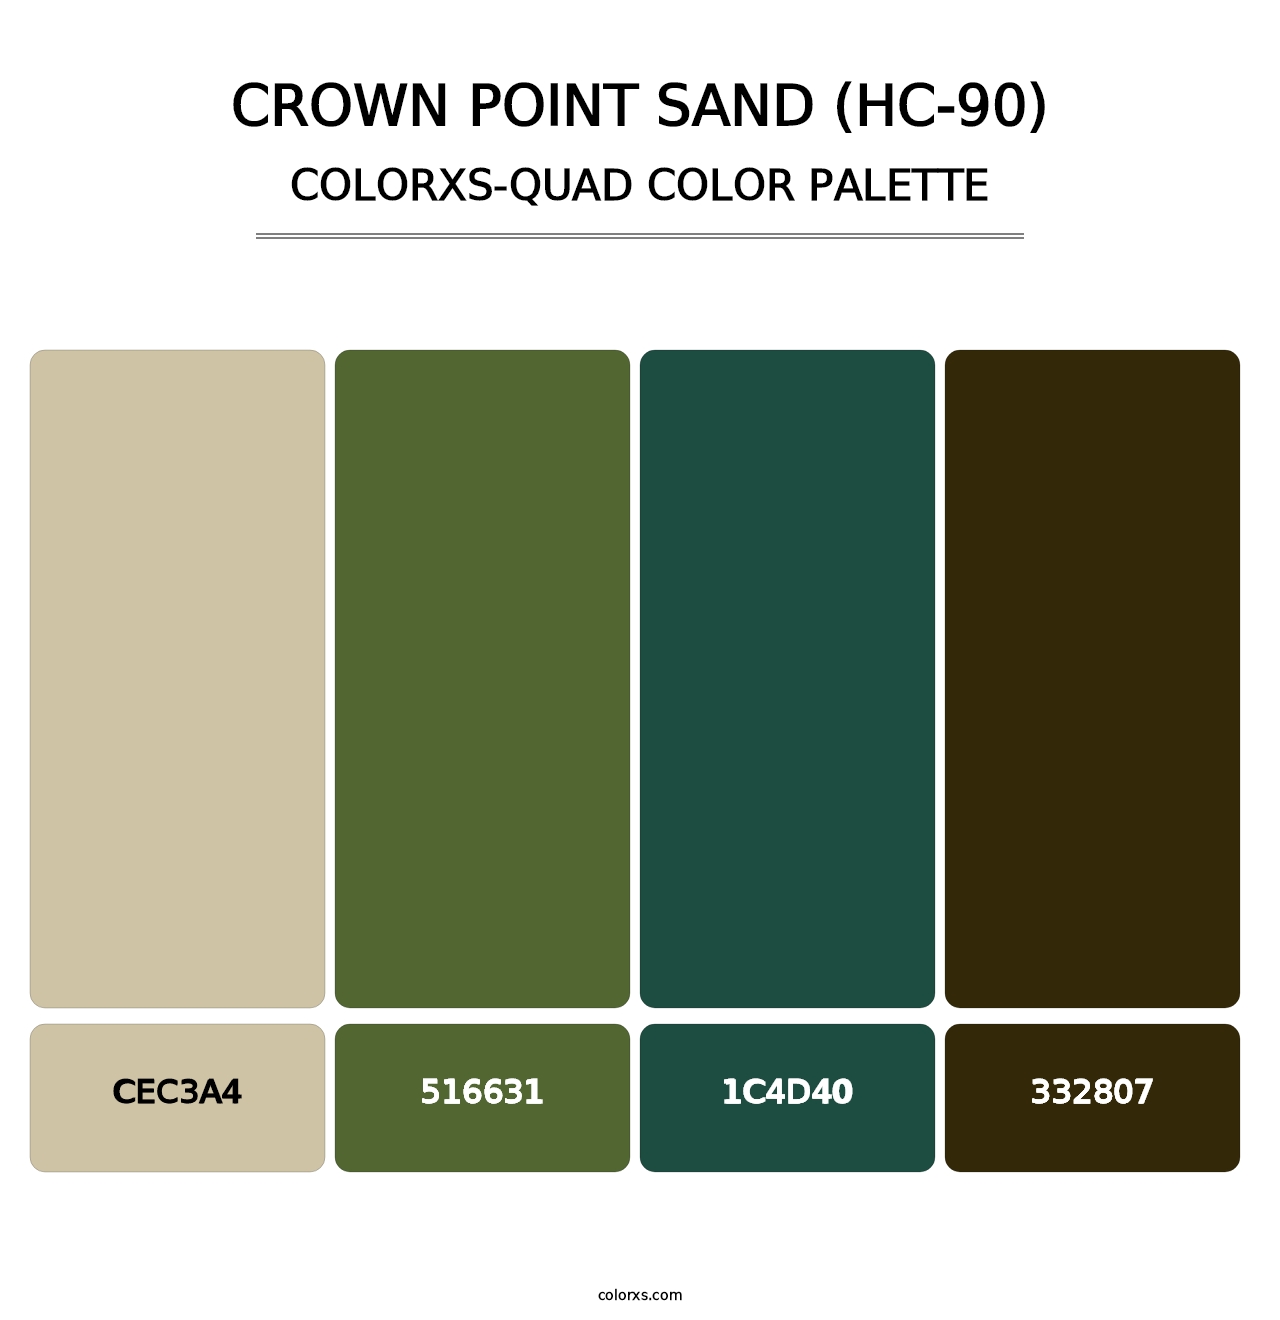 Crown Point Sand (HC-90) - Colorxs Quad Palette